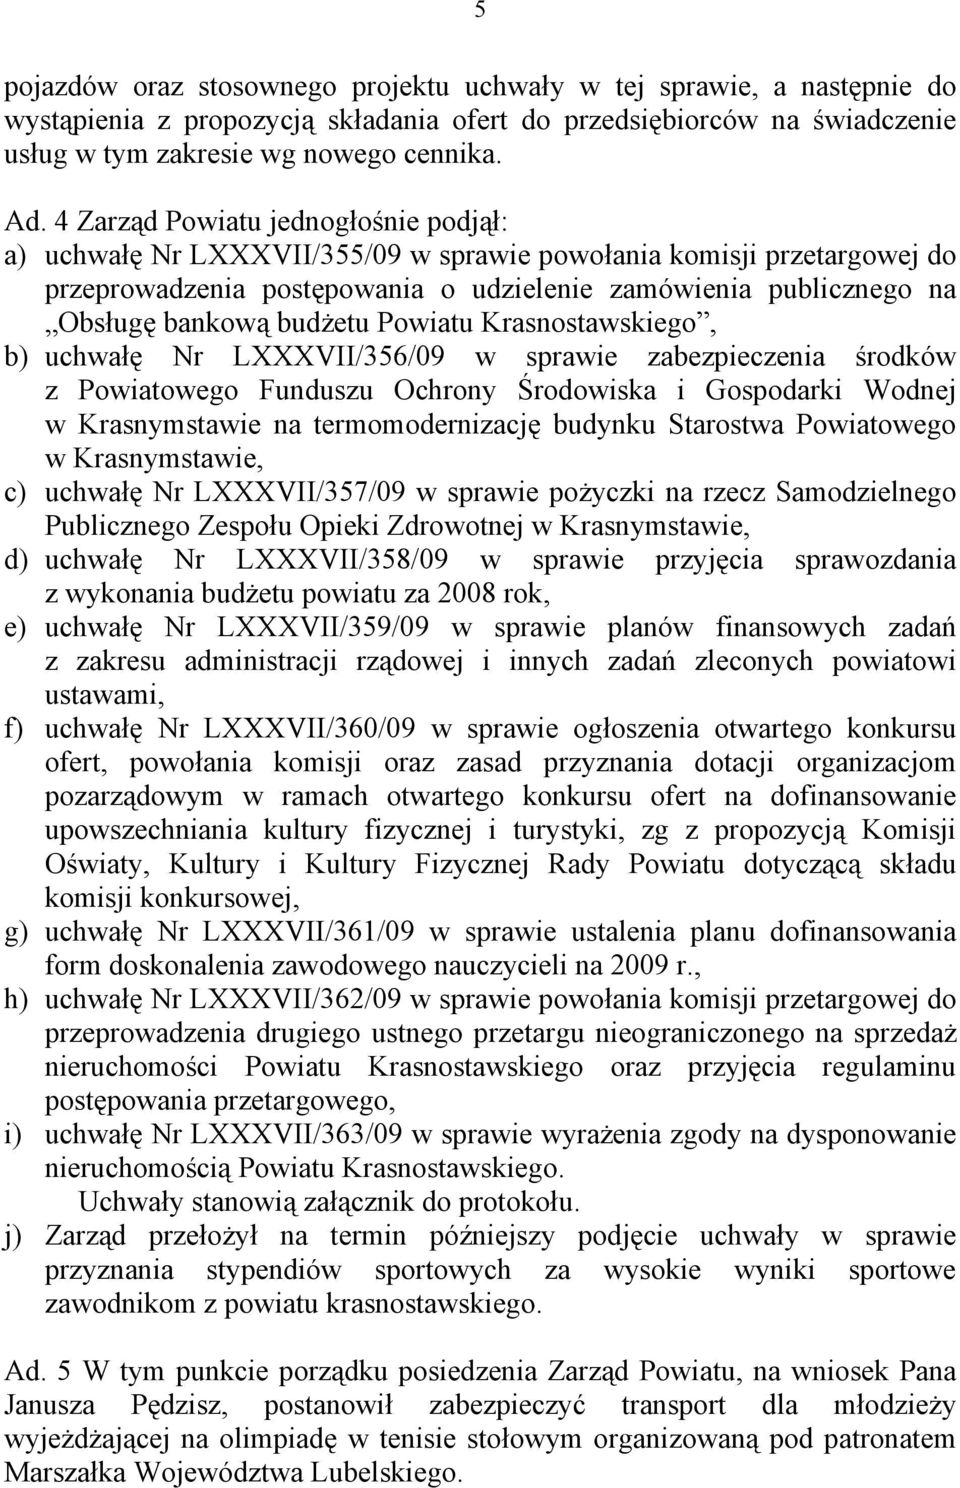 budżetu Powiatu Krasnostawskiego, b) uchwałę Nr LXXXVII/356/09 w sprawie zabezpieczenia środków z Powiatowego Funduszu Ochrony Środowiska i Gospodarki Wodnej w Krasnymstawie na termomodernizację